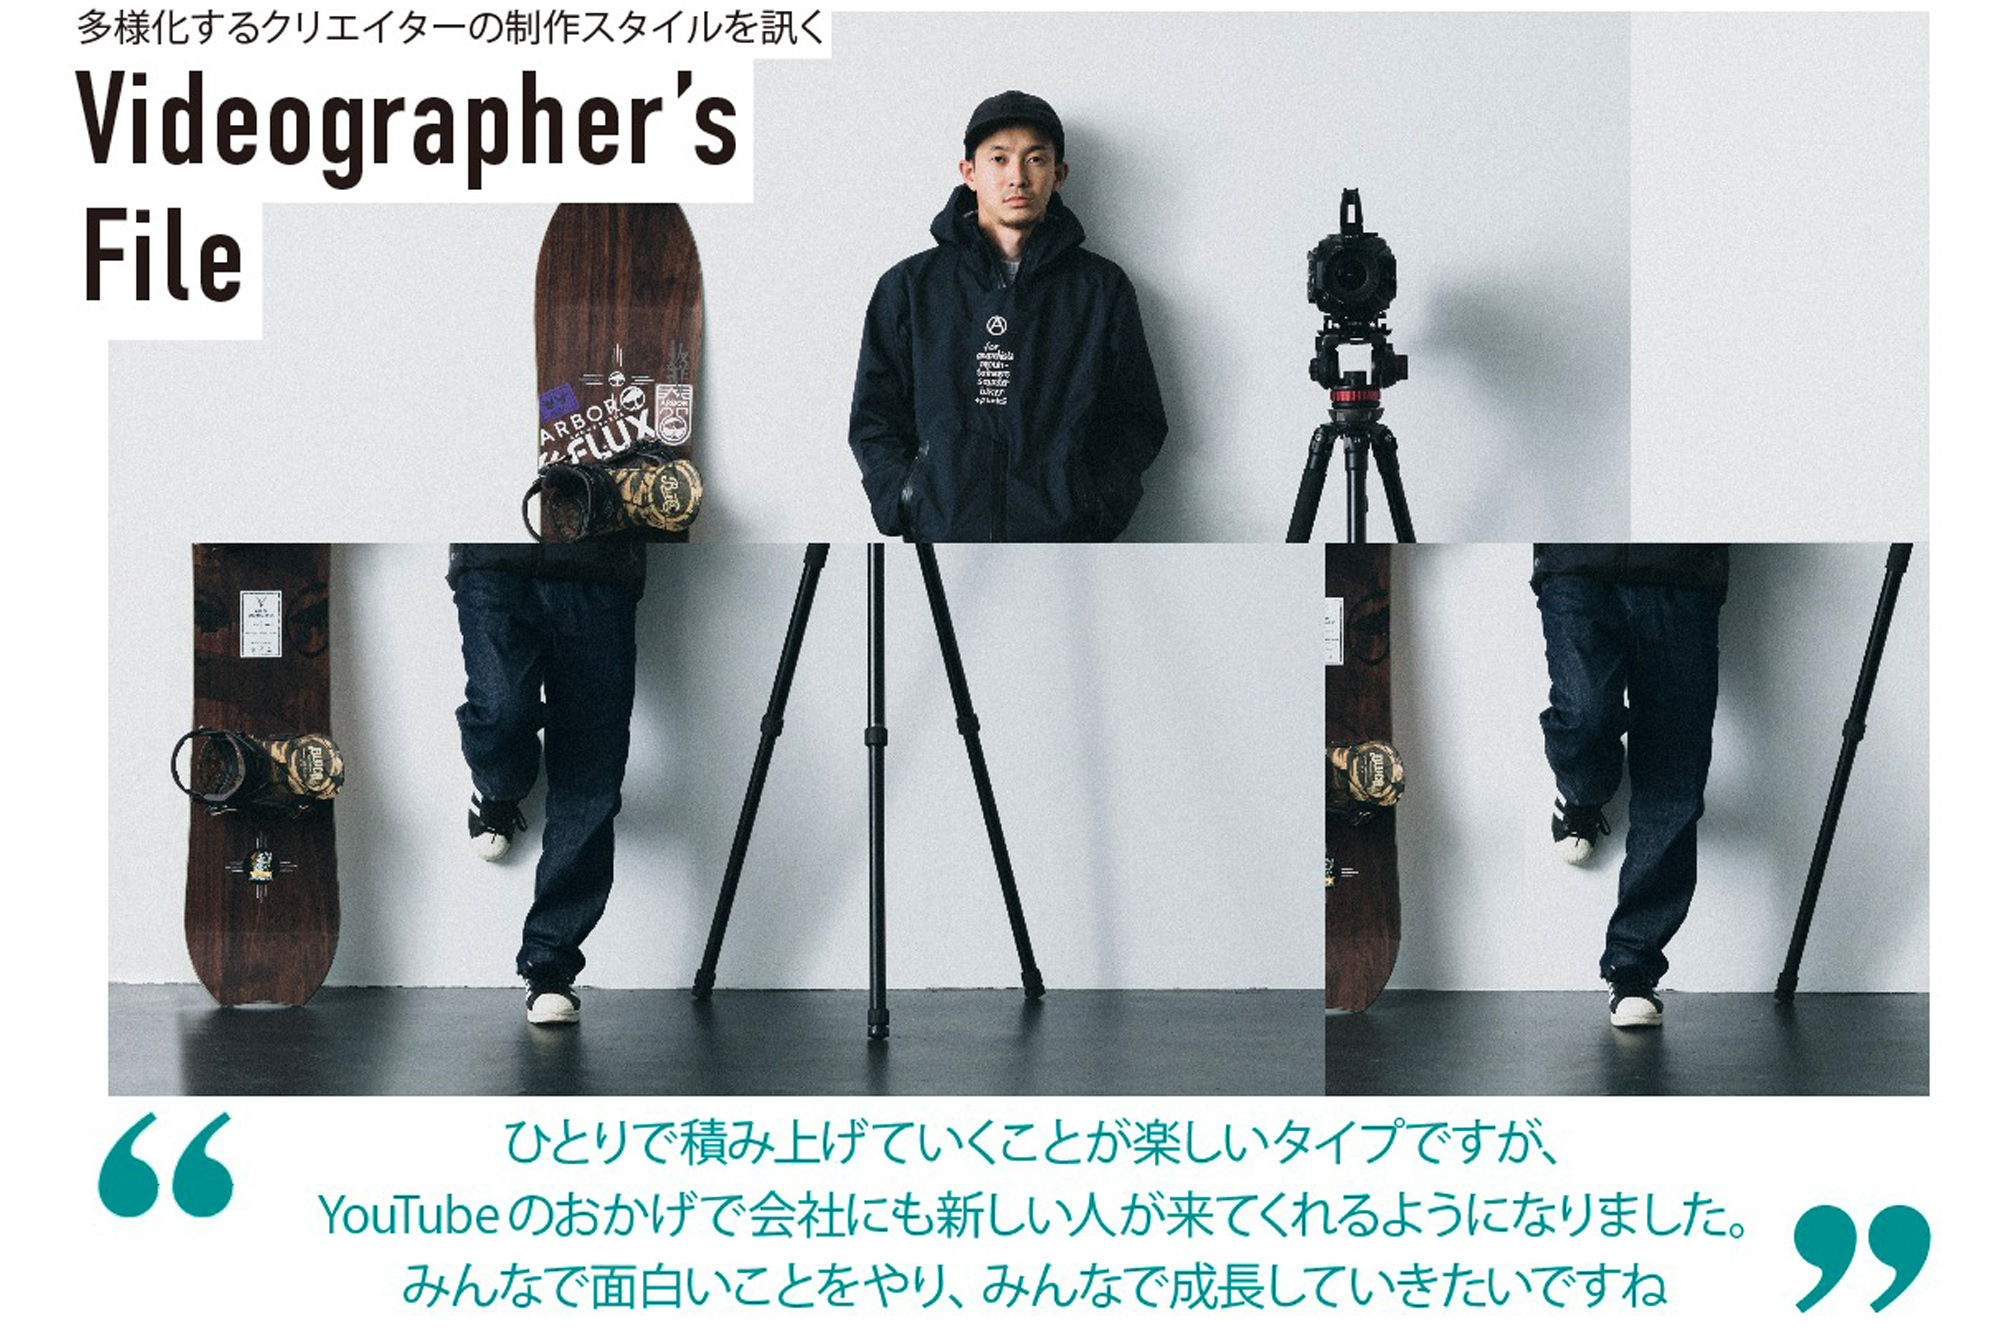 多様化する映像クリエイターの制作スタイルを訊く『Videographer's